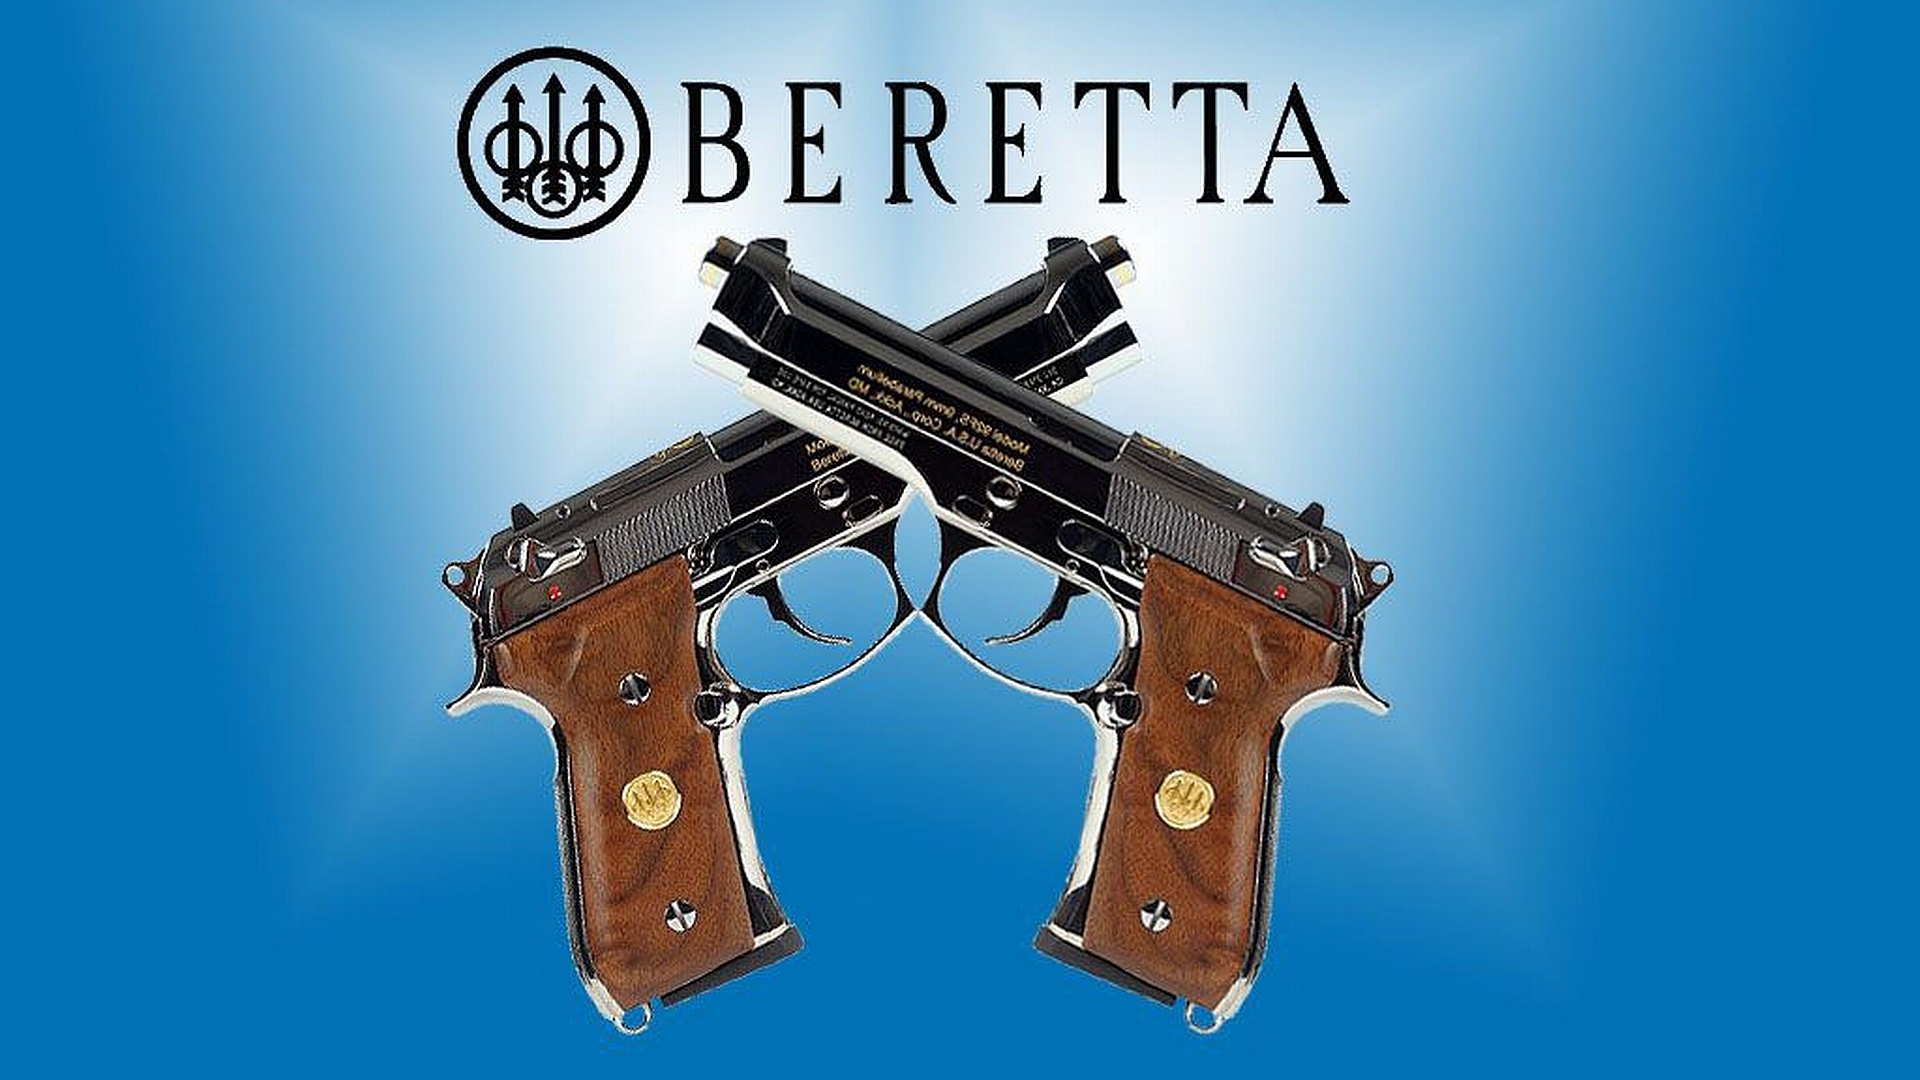 12 Beretta Pistol HD Wallpapers Backgrounds - Wallpaper Abyss